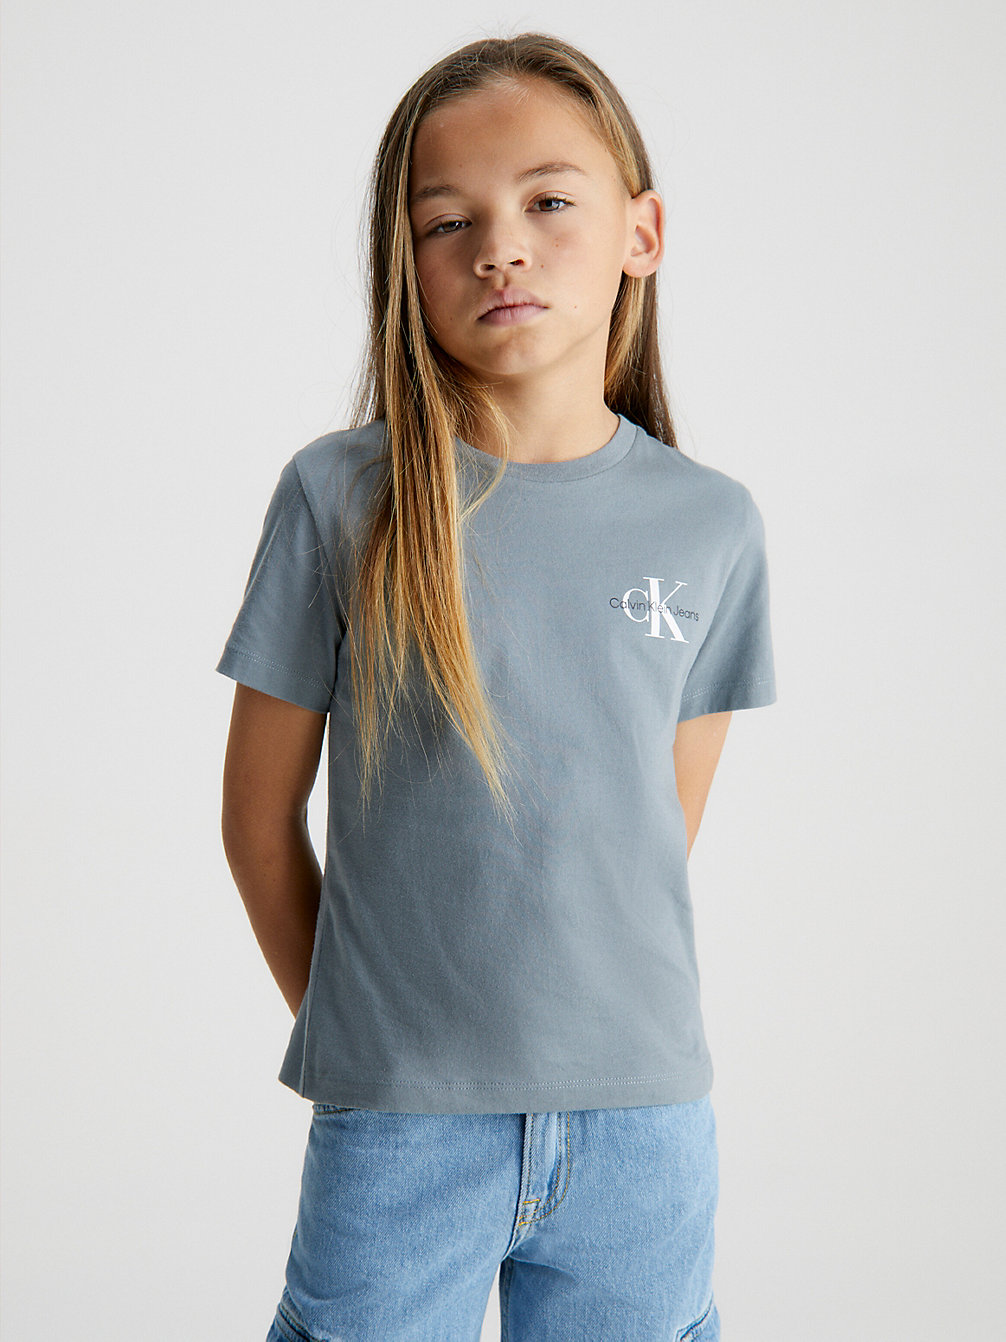 OVERCAST GREY T-Shirt Van Biologisch Katoen undefined jongens Calvin Klein